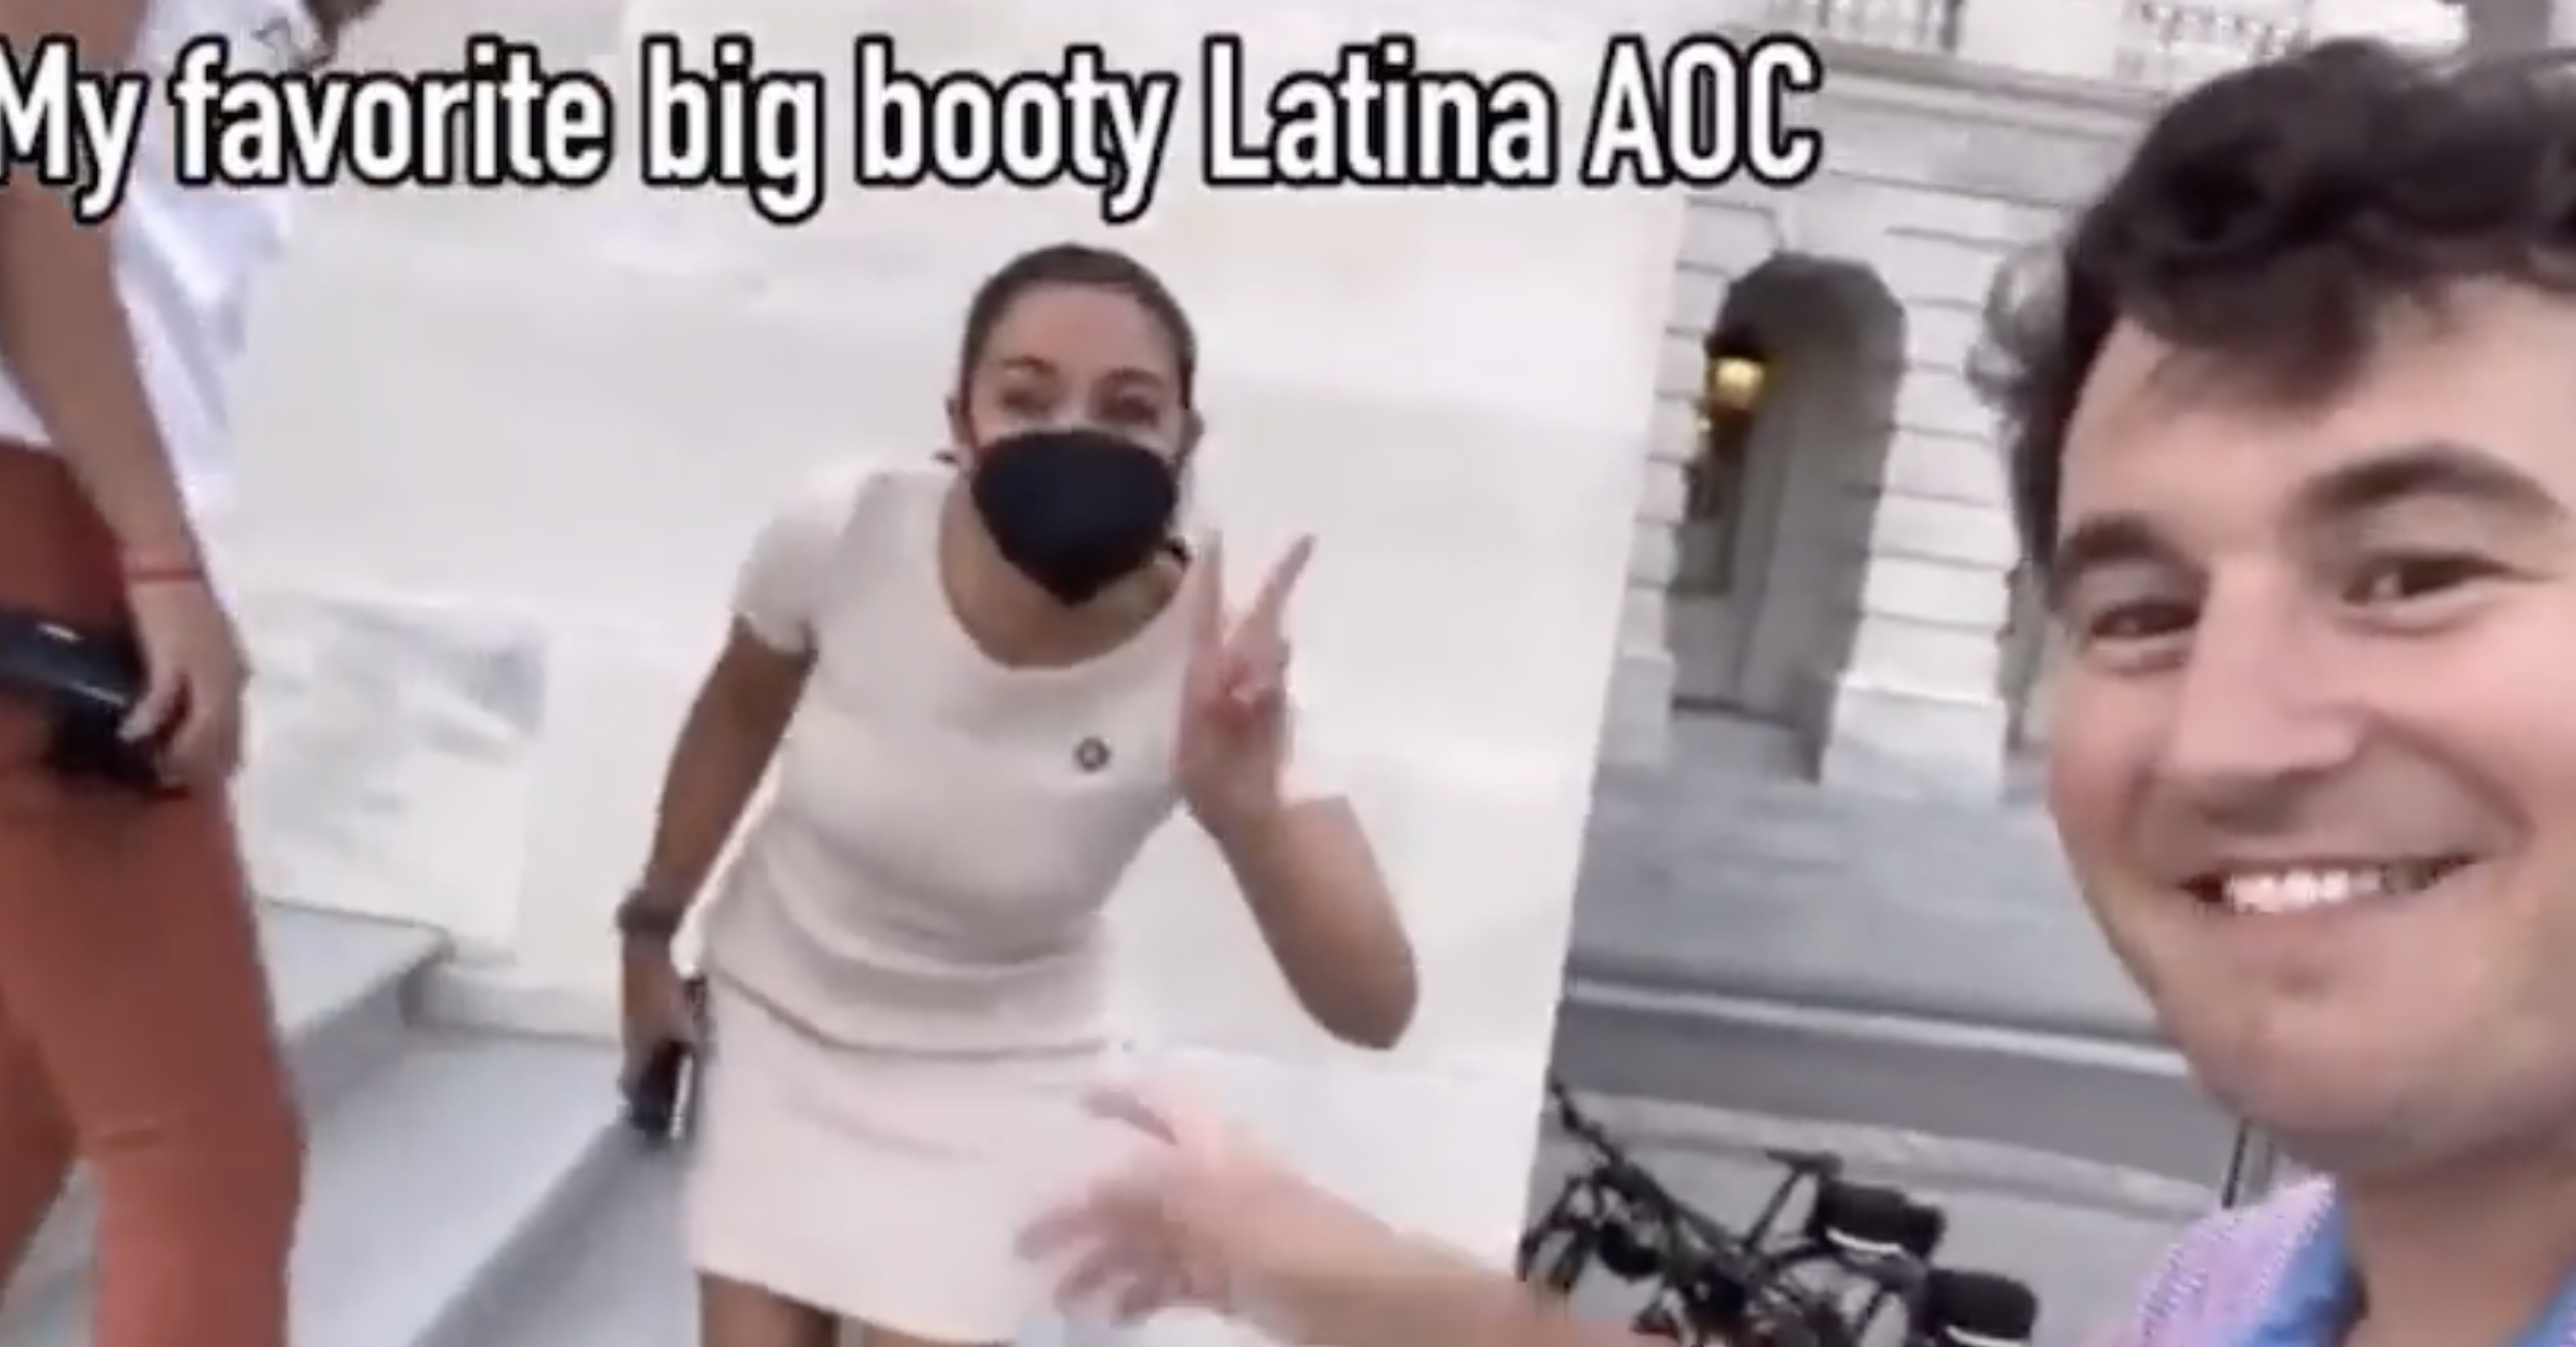 amy laxson add photo hot latina big butt